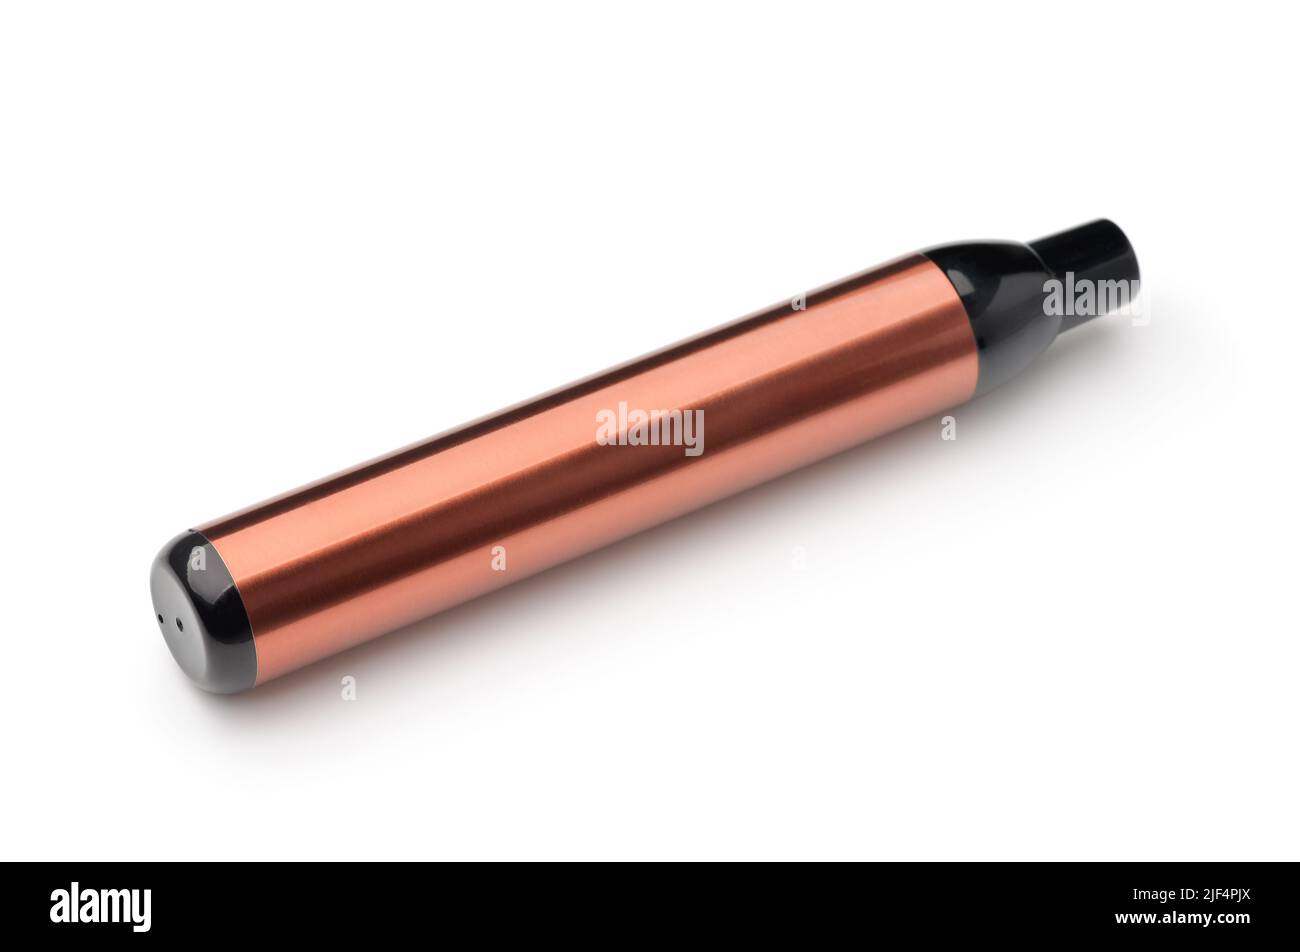 Sigaretta elettronica usa e getta di colore bronzo isolata su bianco Foto Stock